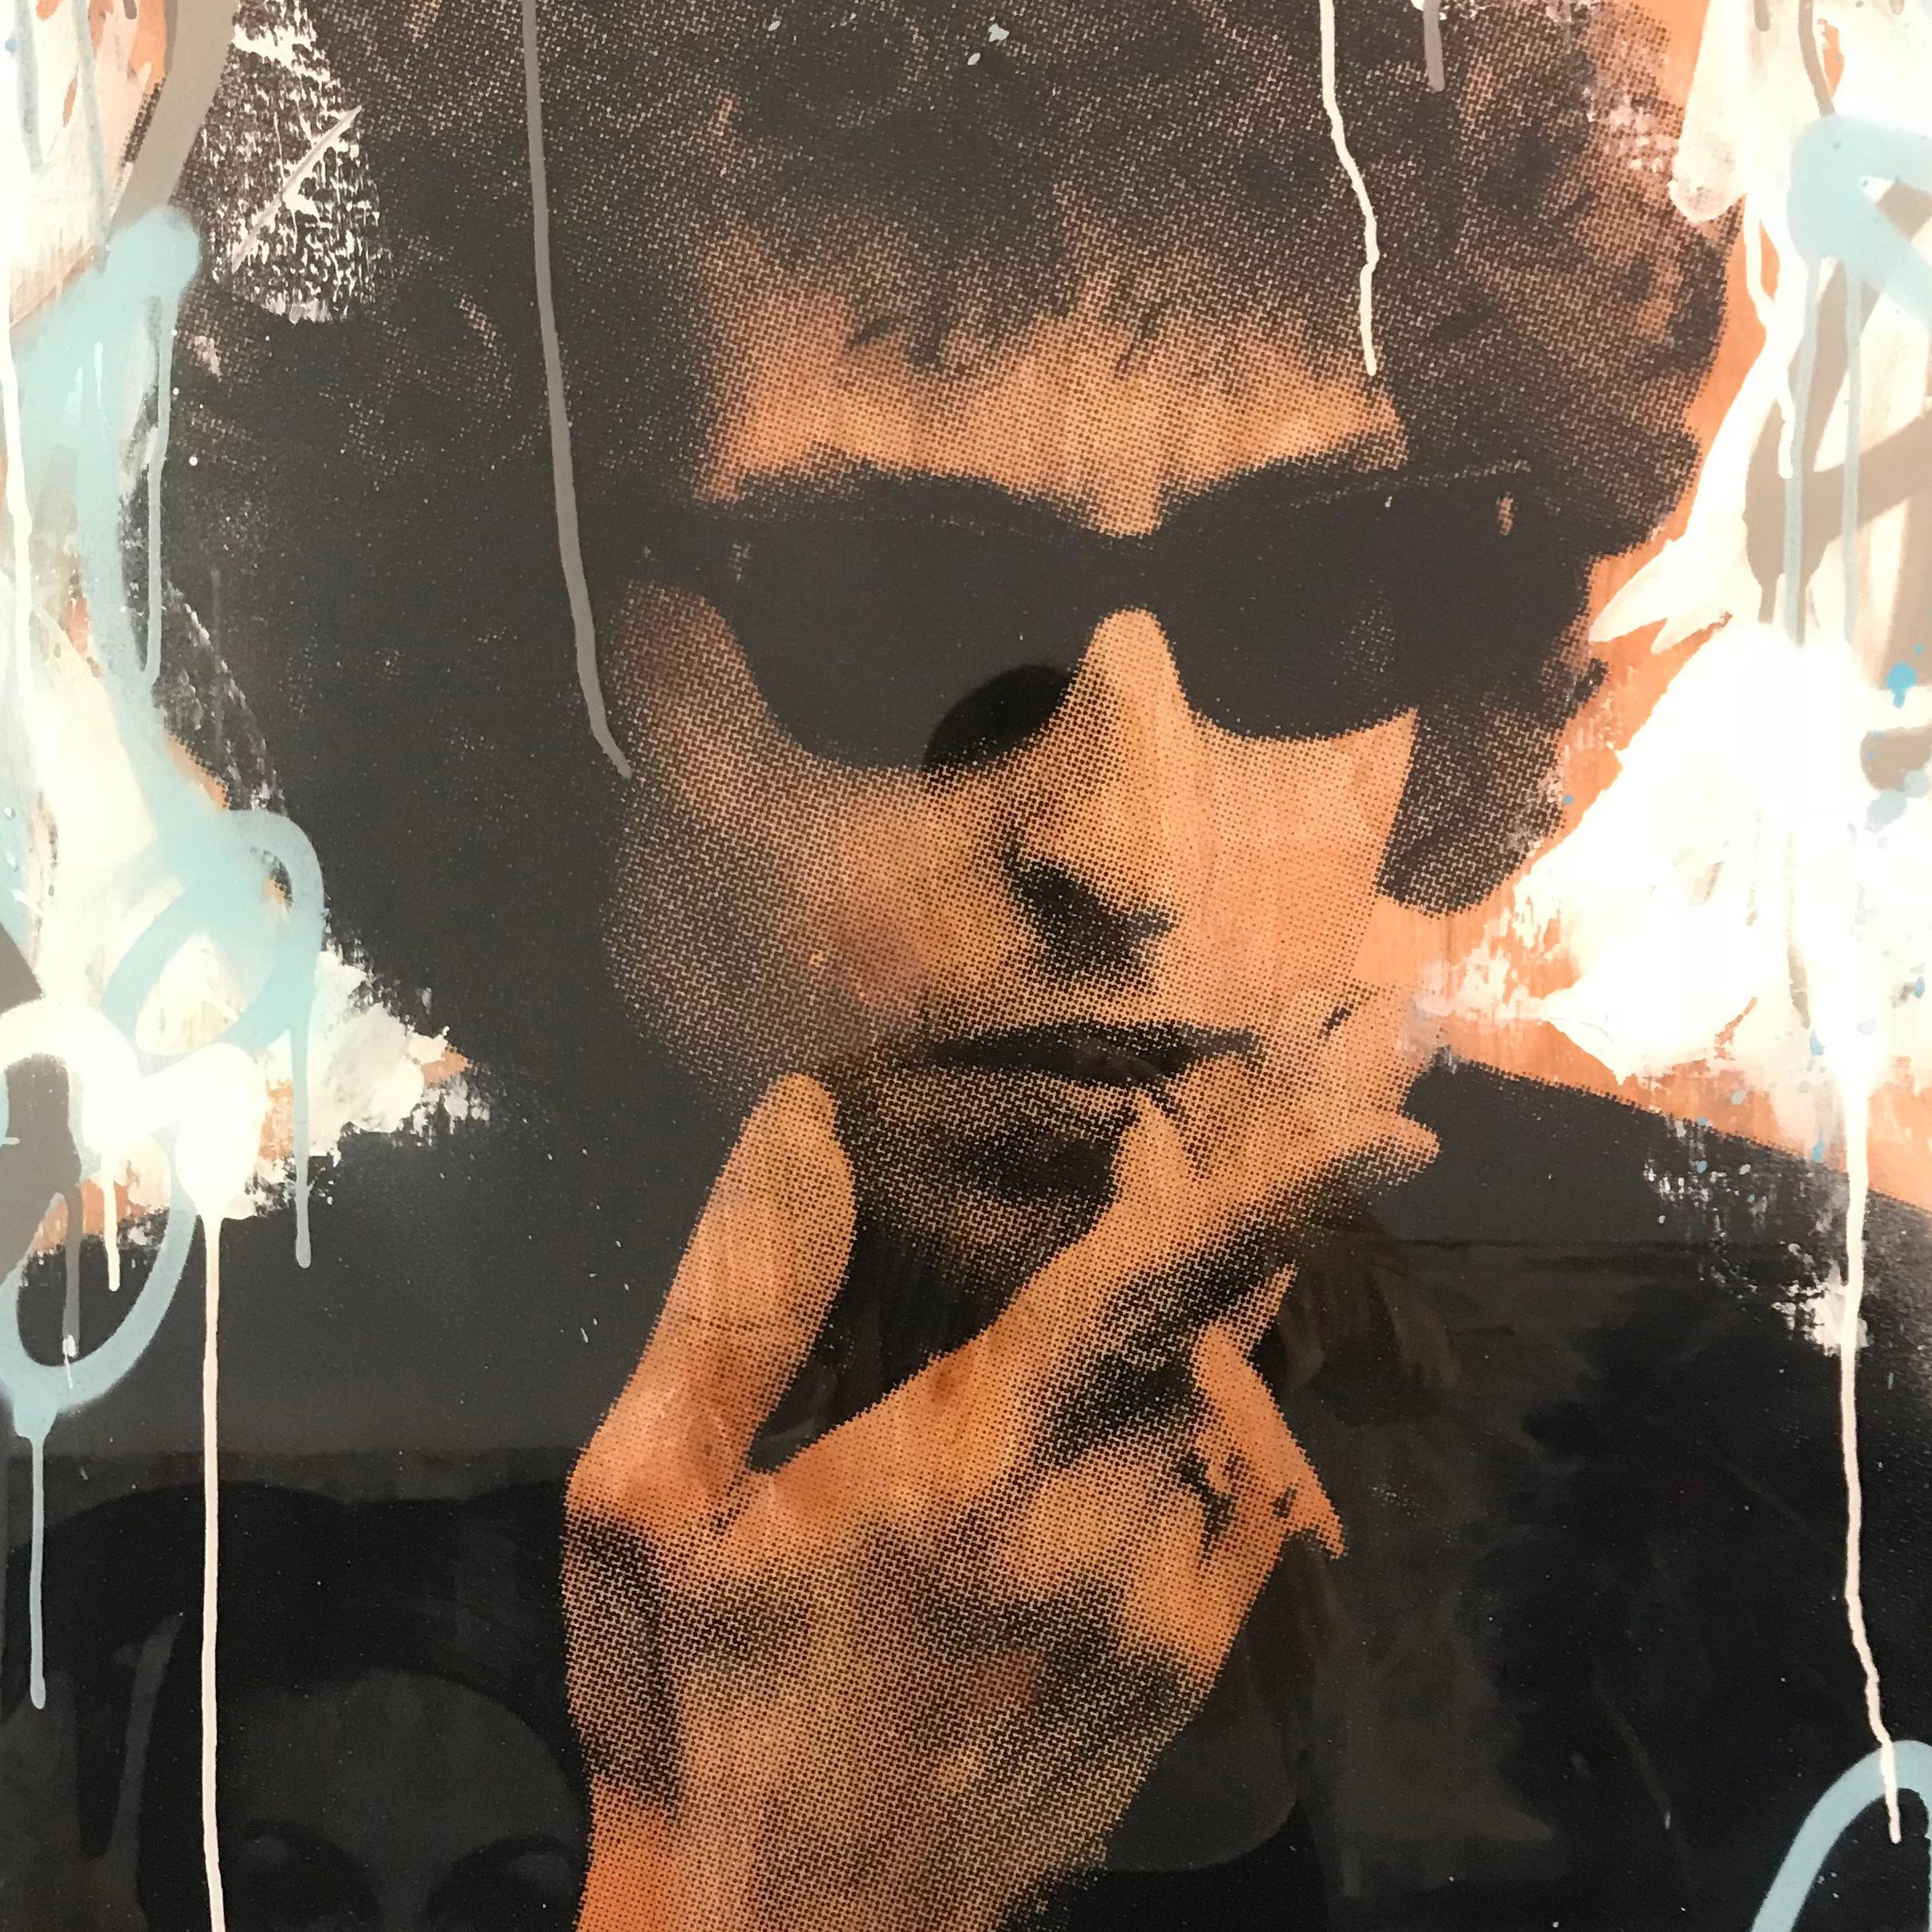 Bob Dylan - Photograph by Seek One